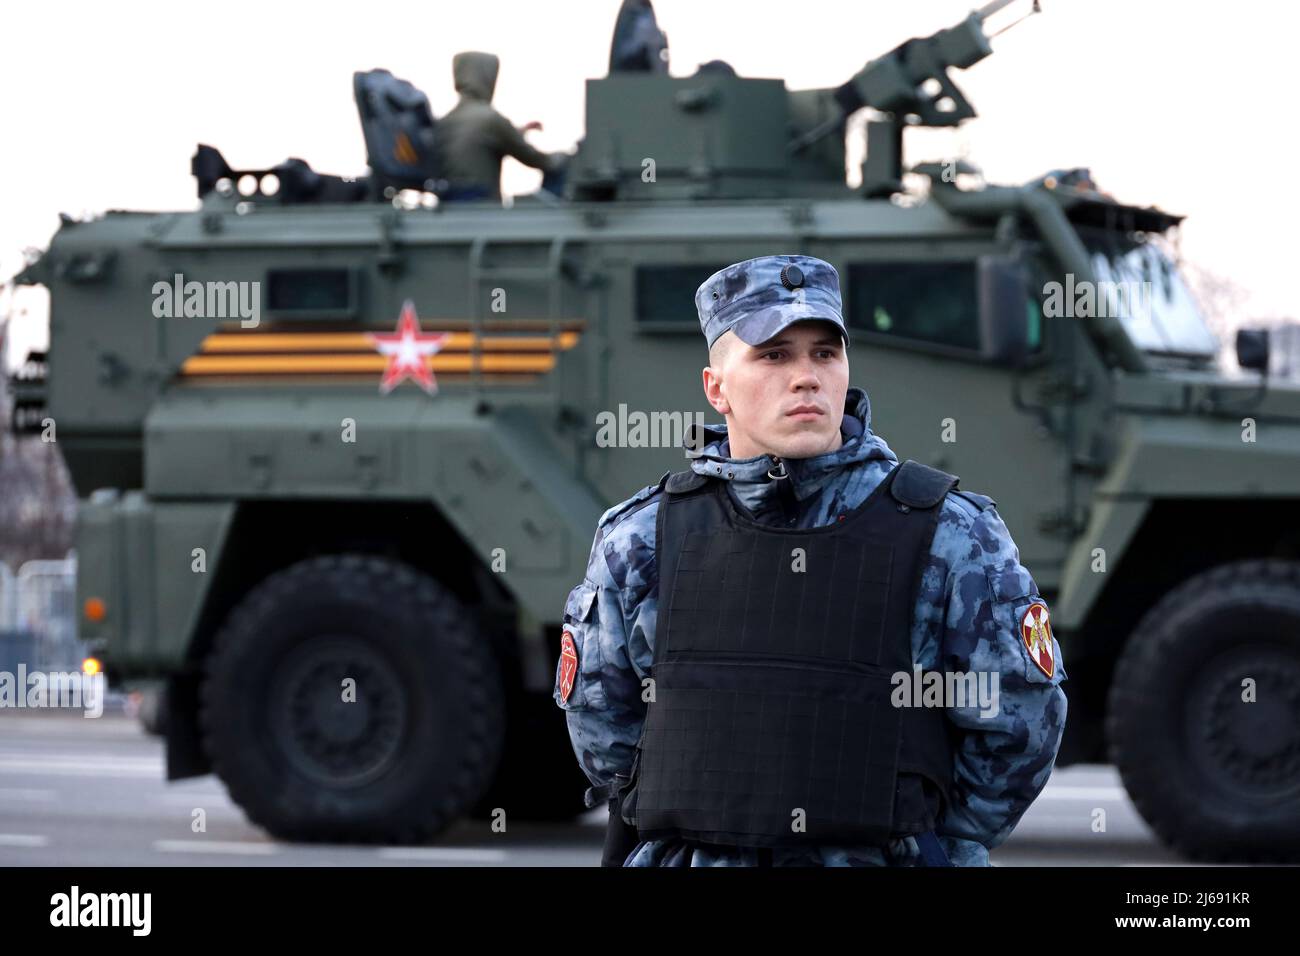 Soldat der russischen Streitkräfte der Nationalgarde in kugelsicherer Weste, die auf dem Hintergrund des gepanzerten Fahrzeugs steht Stockfoto